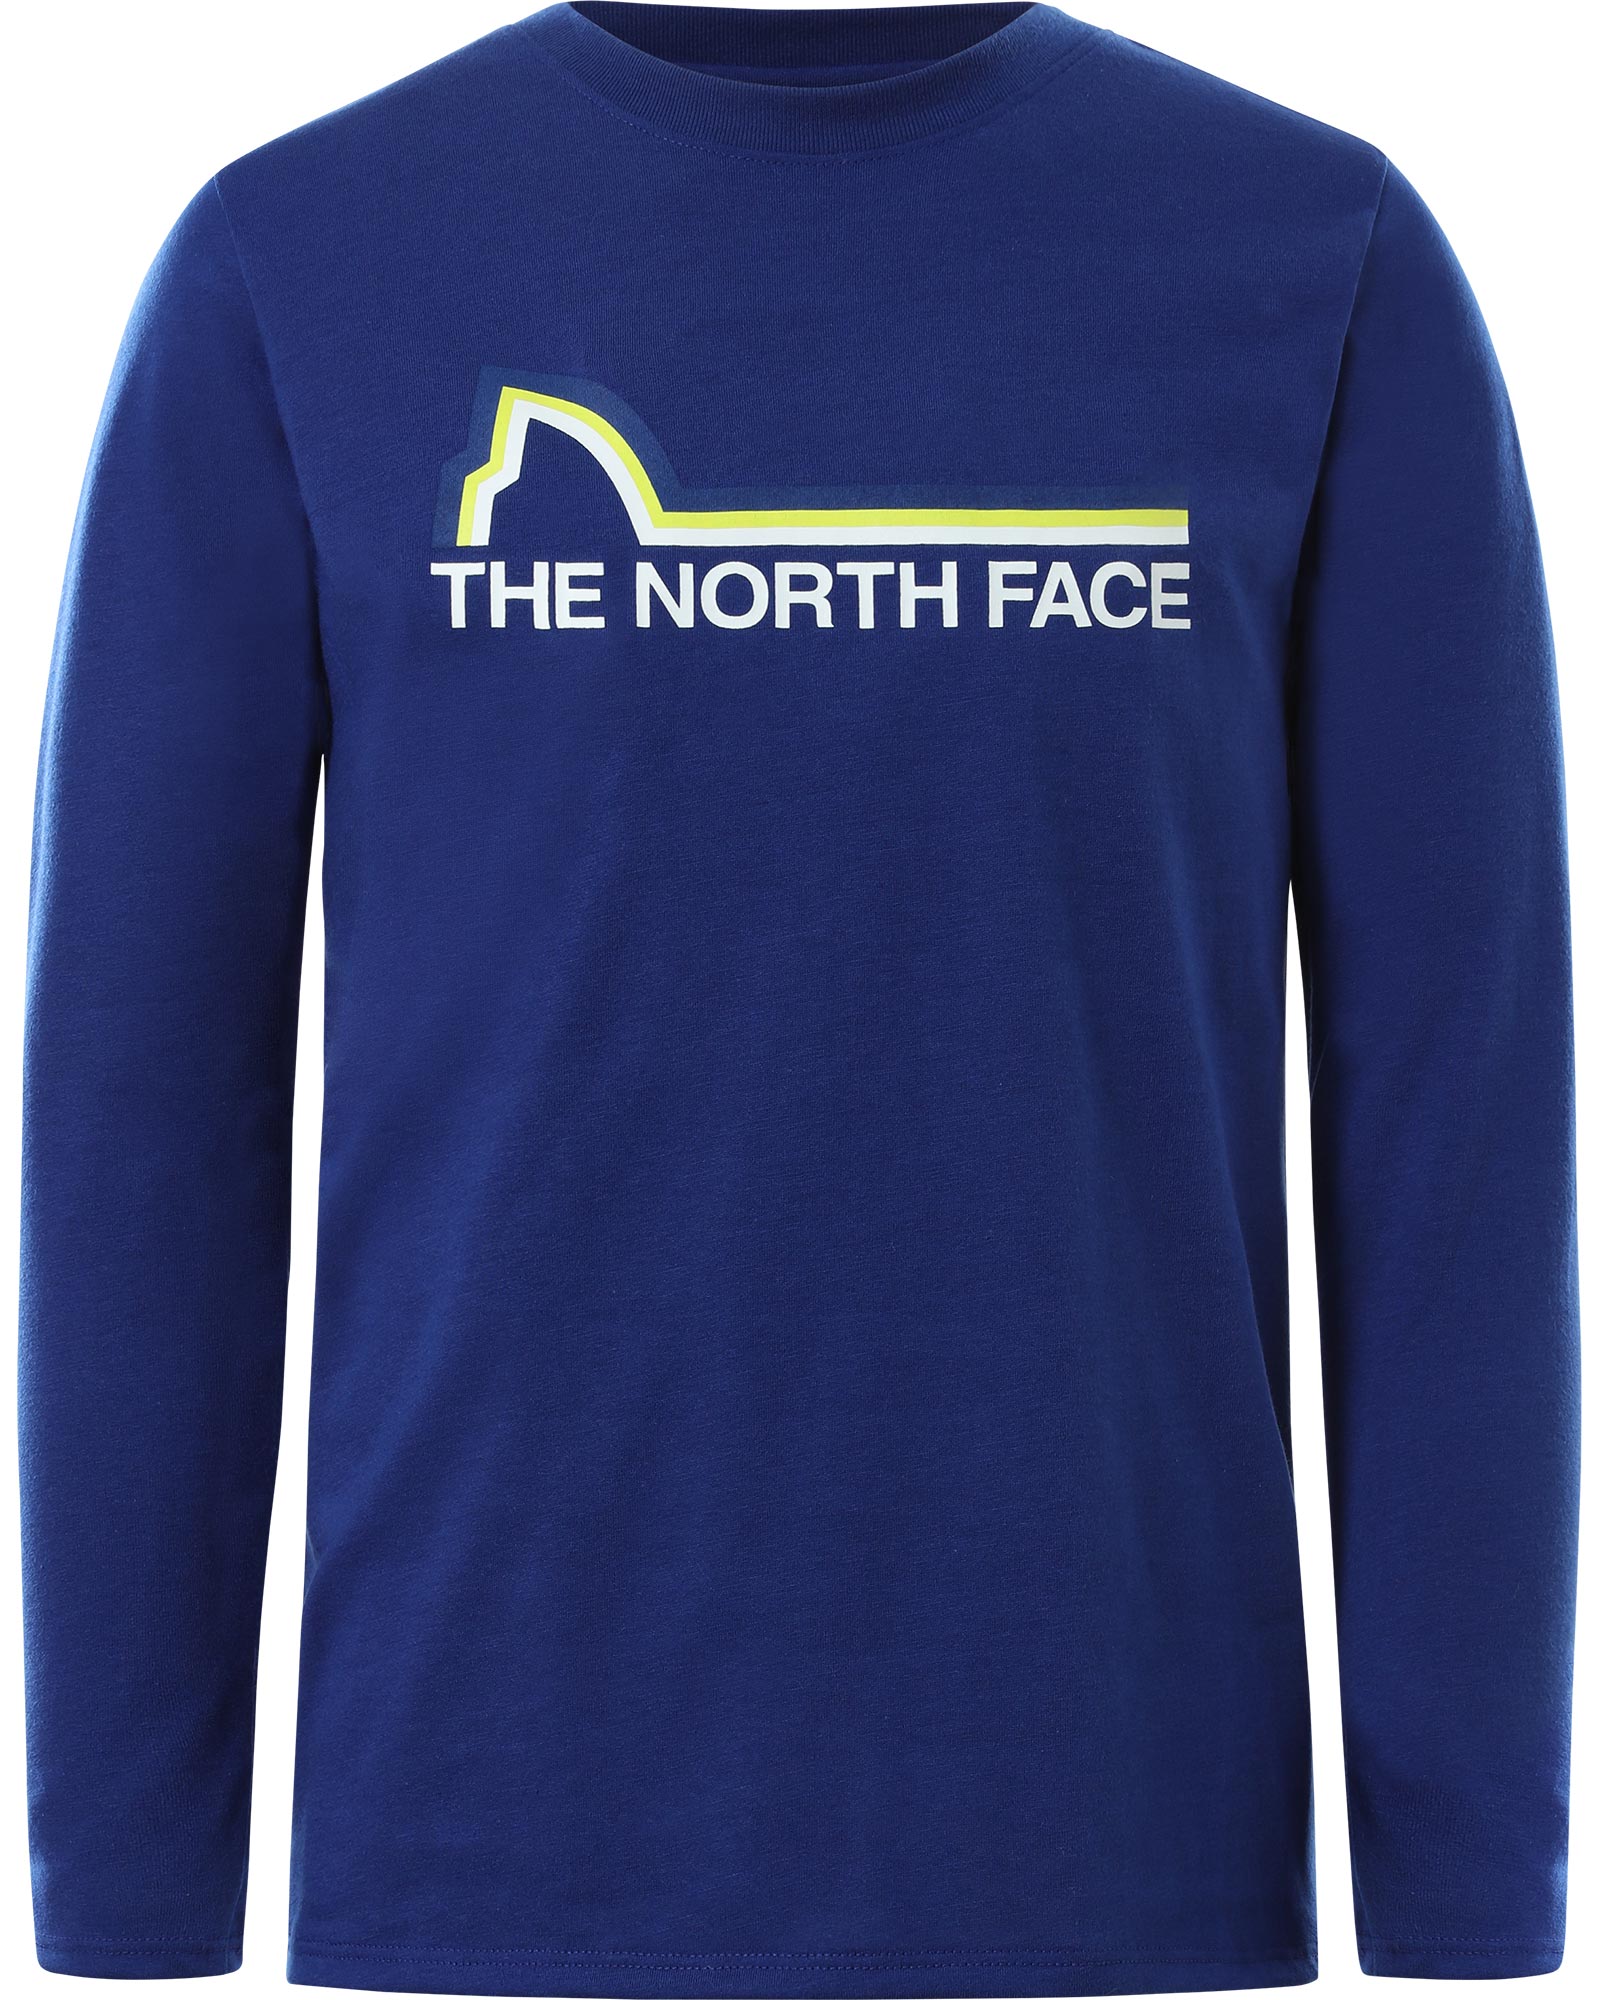 The North Face On Mountain Boys’ Long Sleeve T Shirt - Bolt Blue S